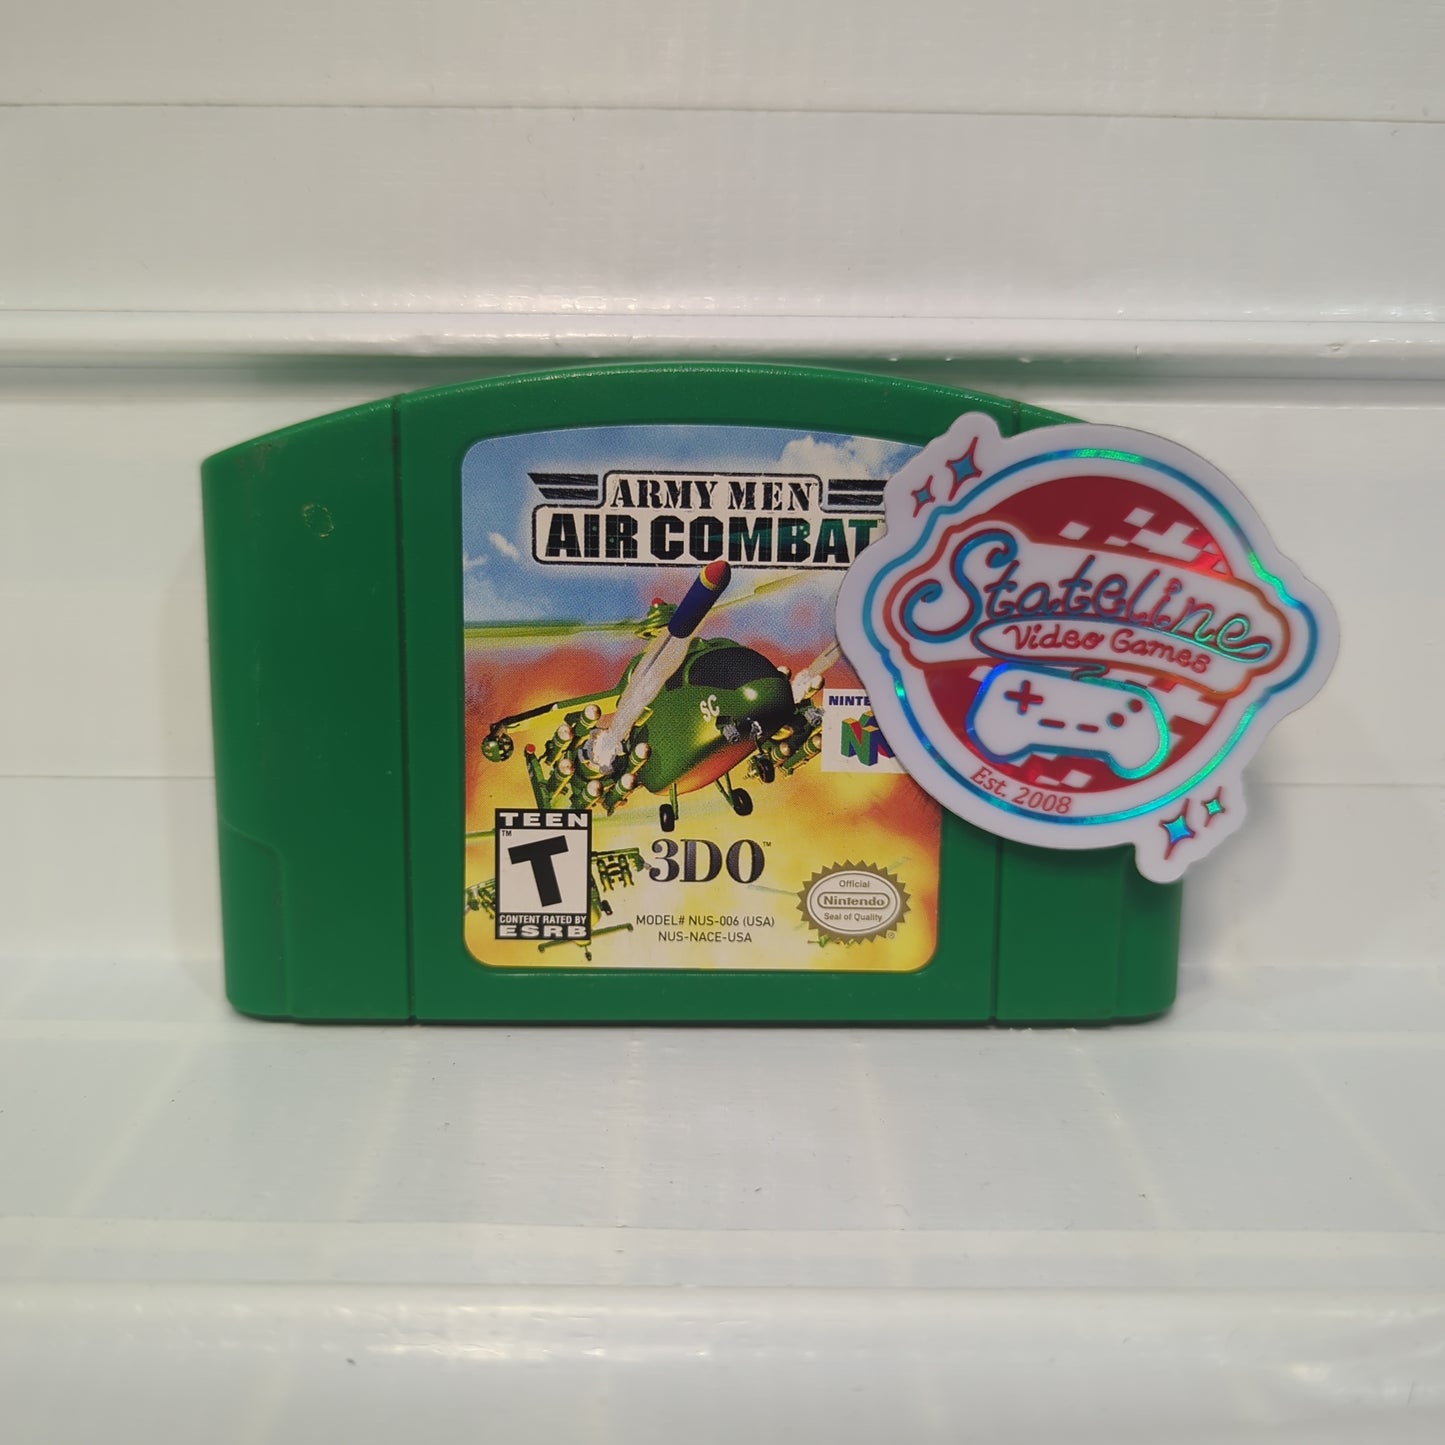 Army Men Air Combat - Nintendo 64